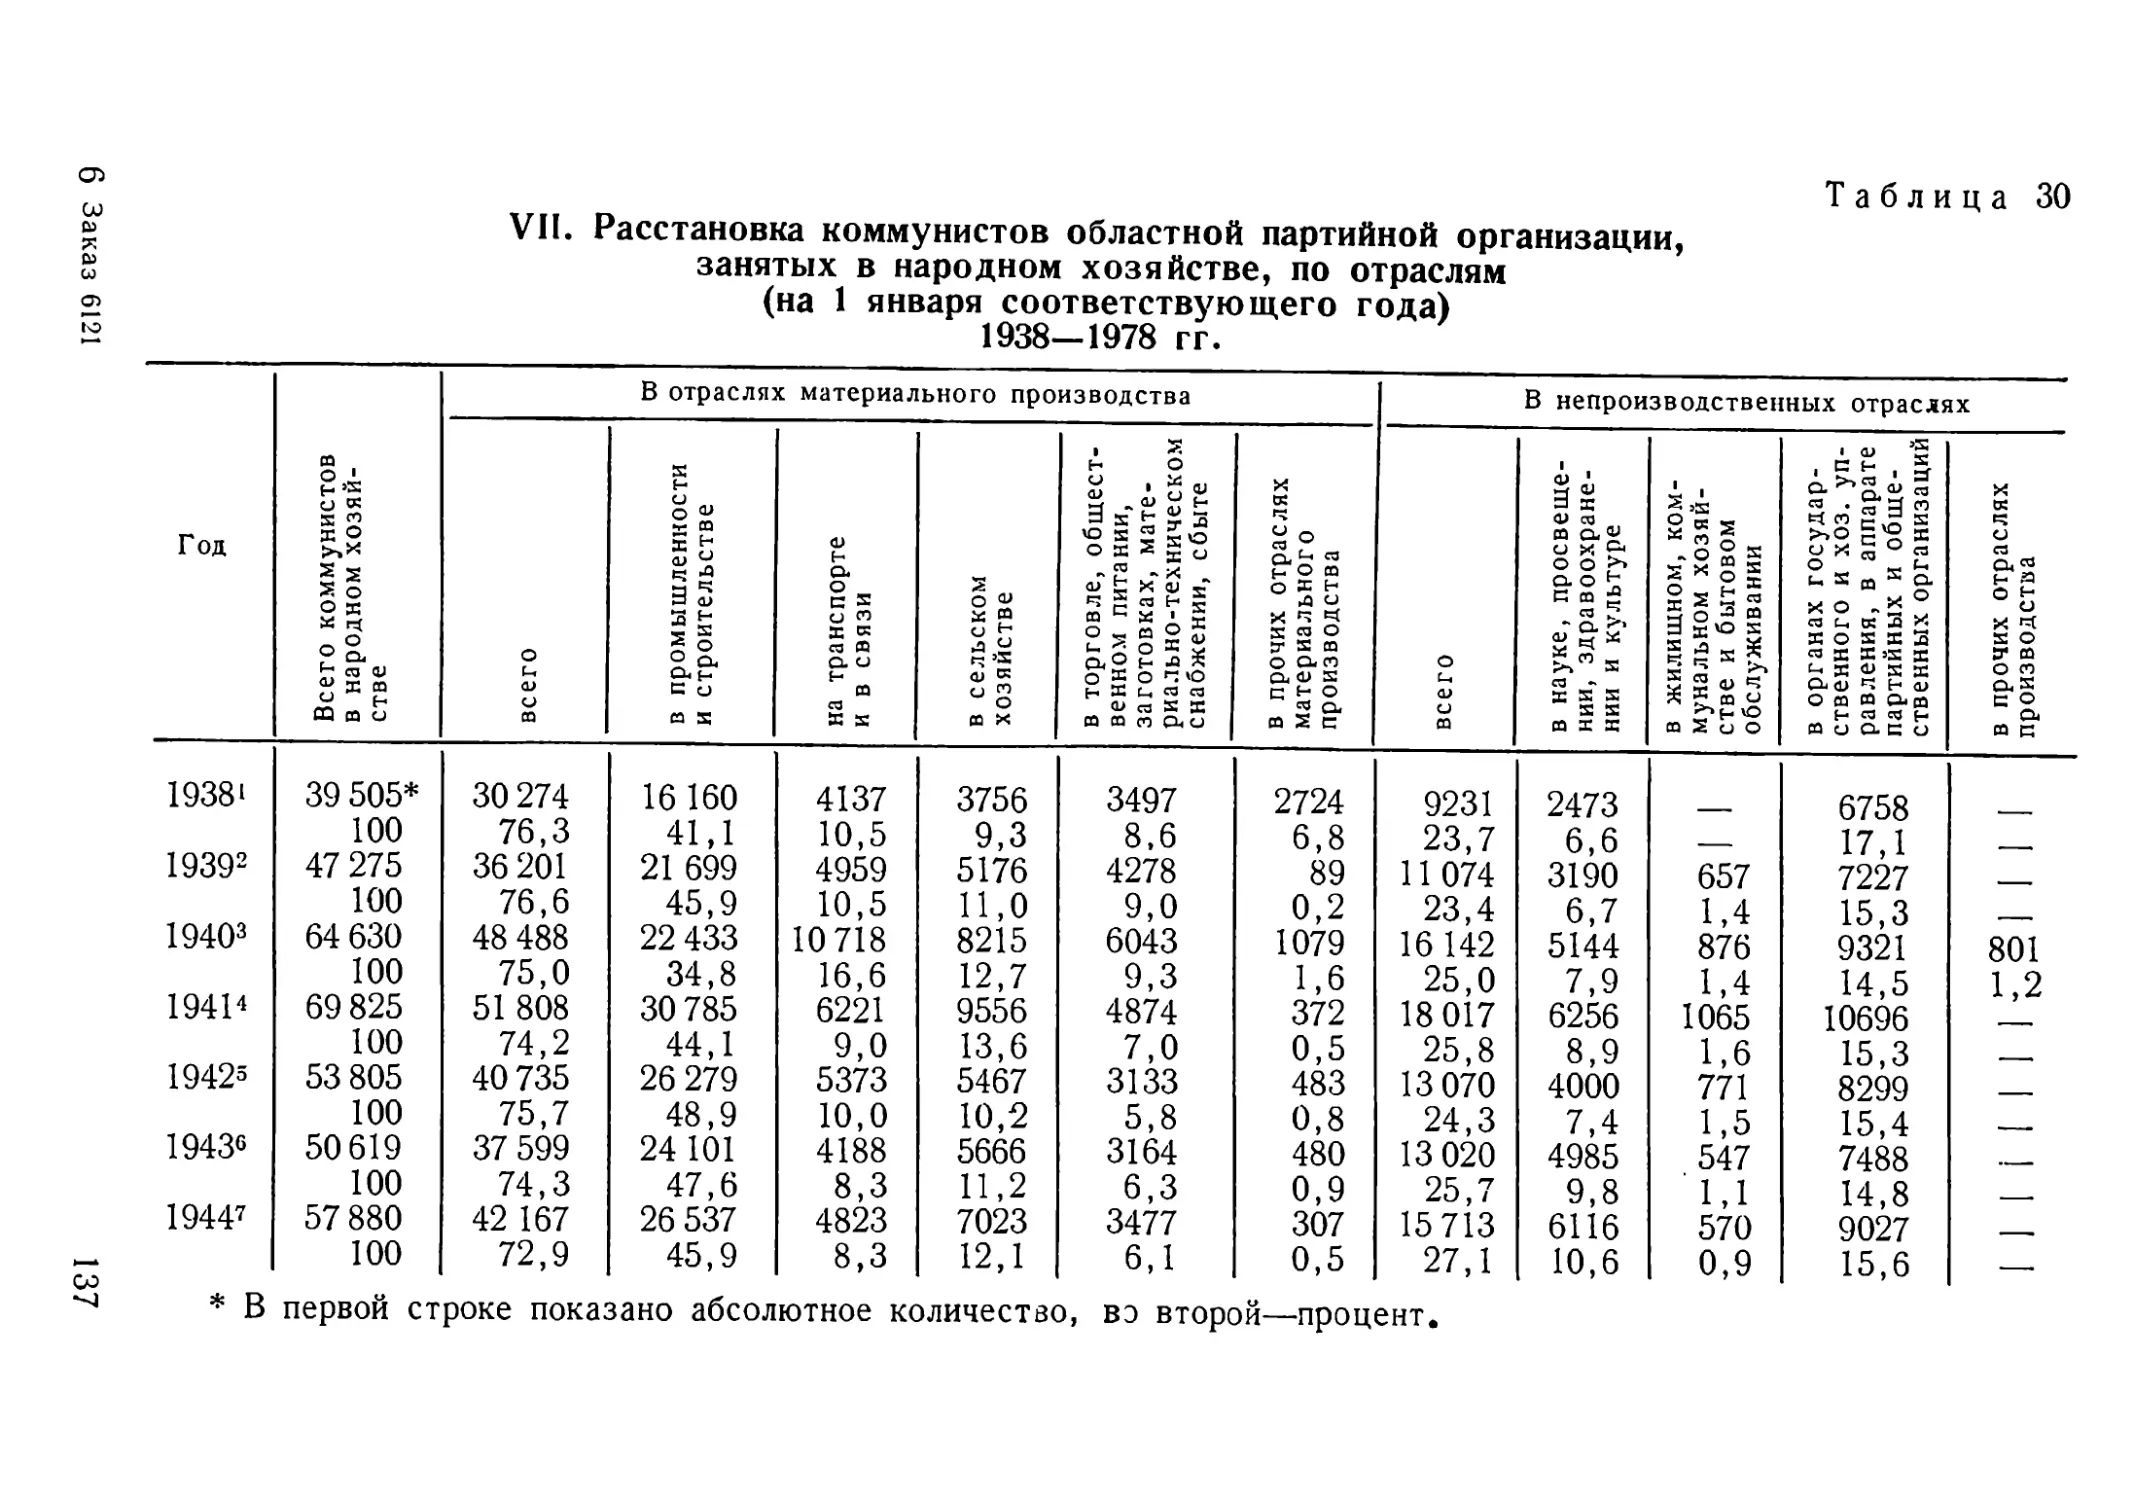 Расстановка коммунистов, запятых в народном хозяйстве, по отраслям 1938—1978 гг. Таблица 30